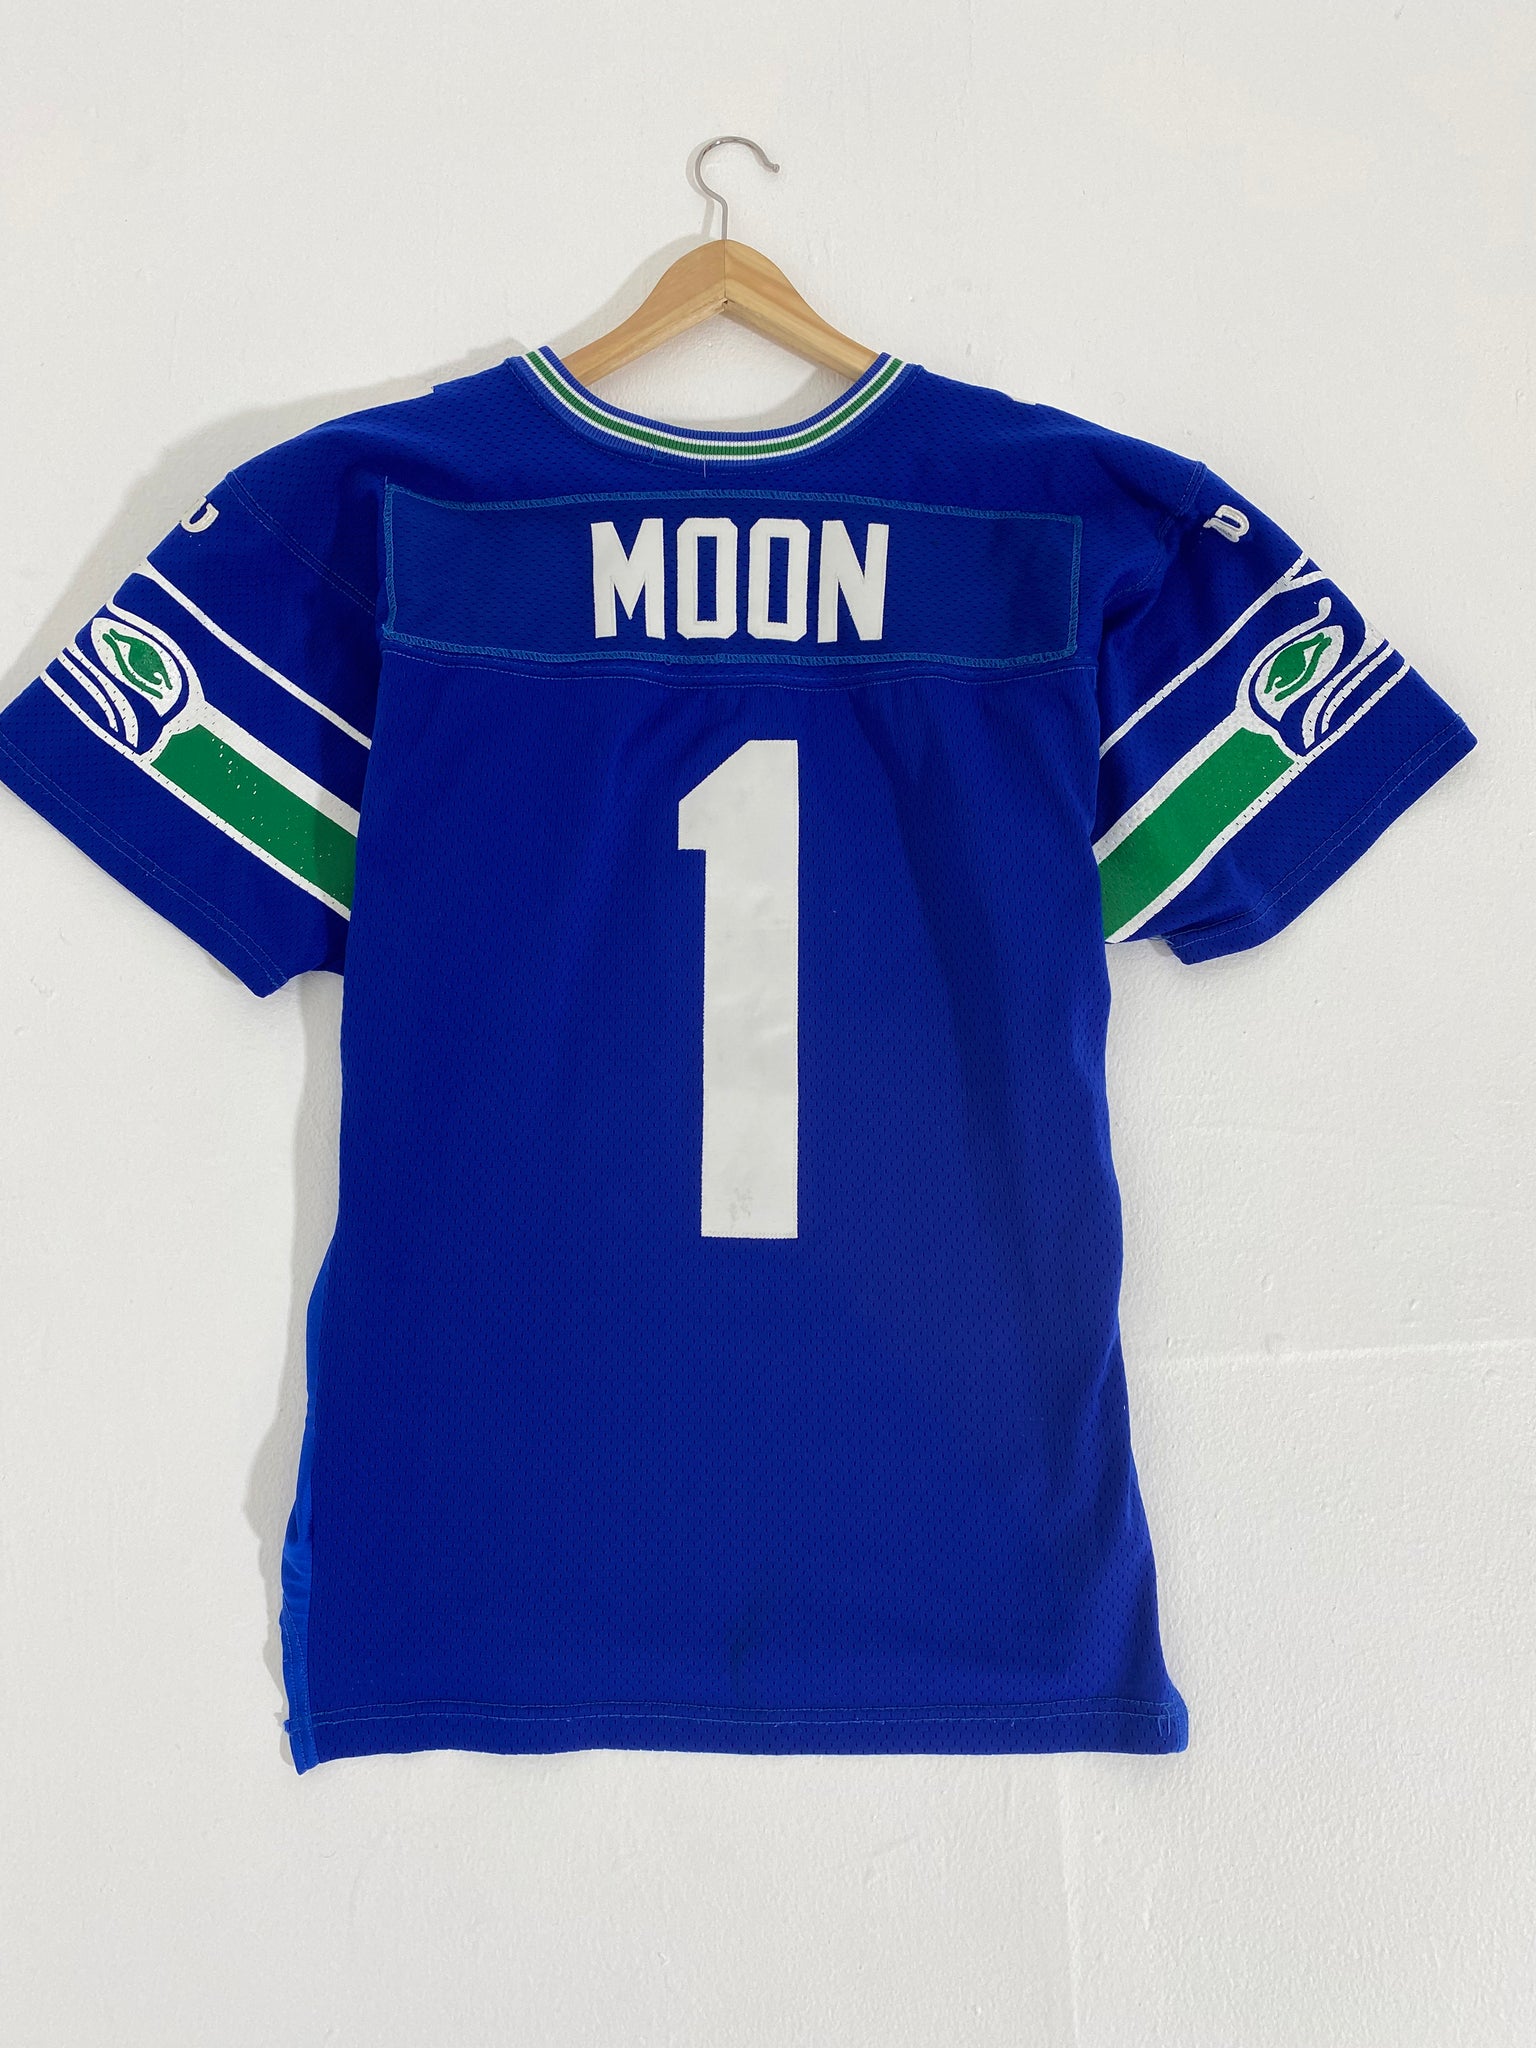 NFL Seattle Seahawks Warren Moon #1 Blue Throwback Jersey Sz. XL